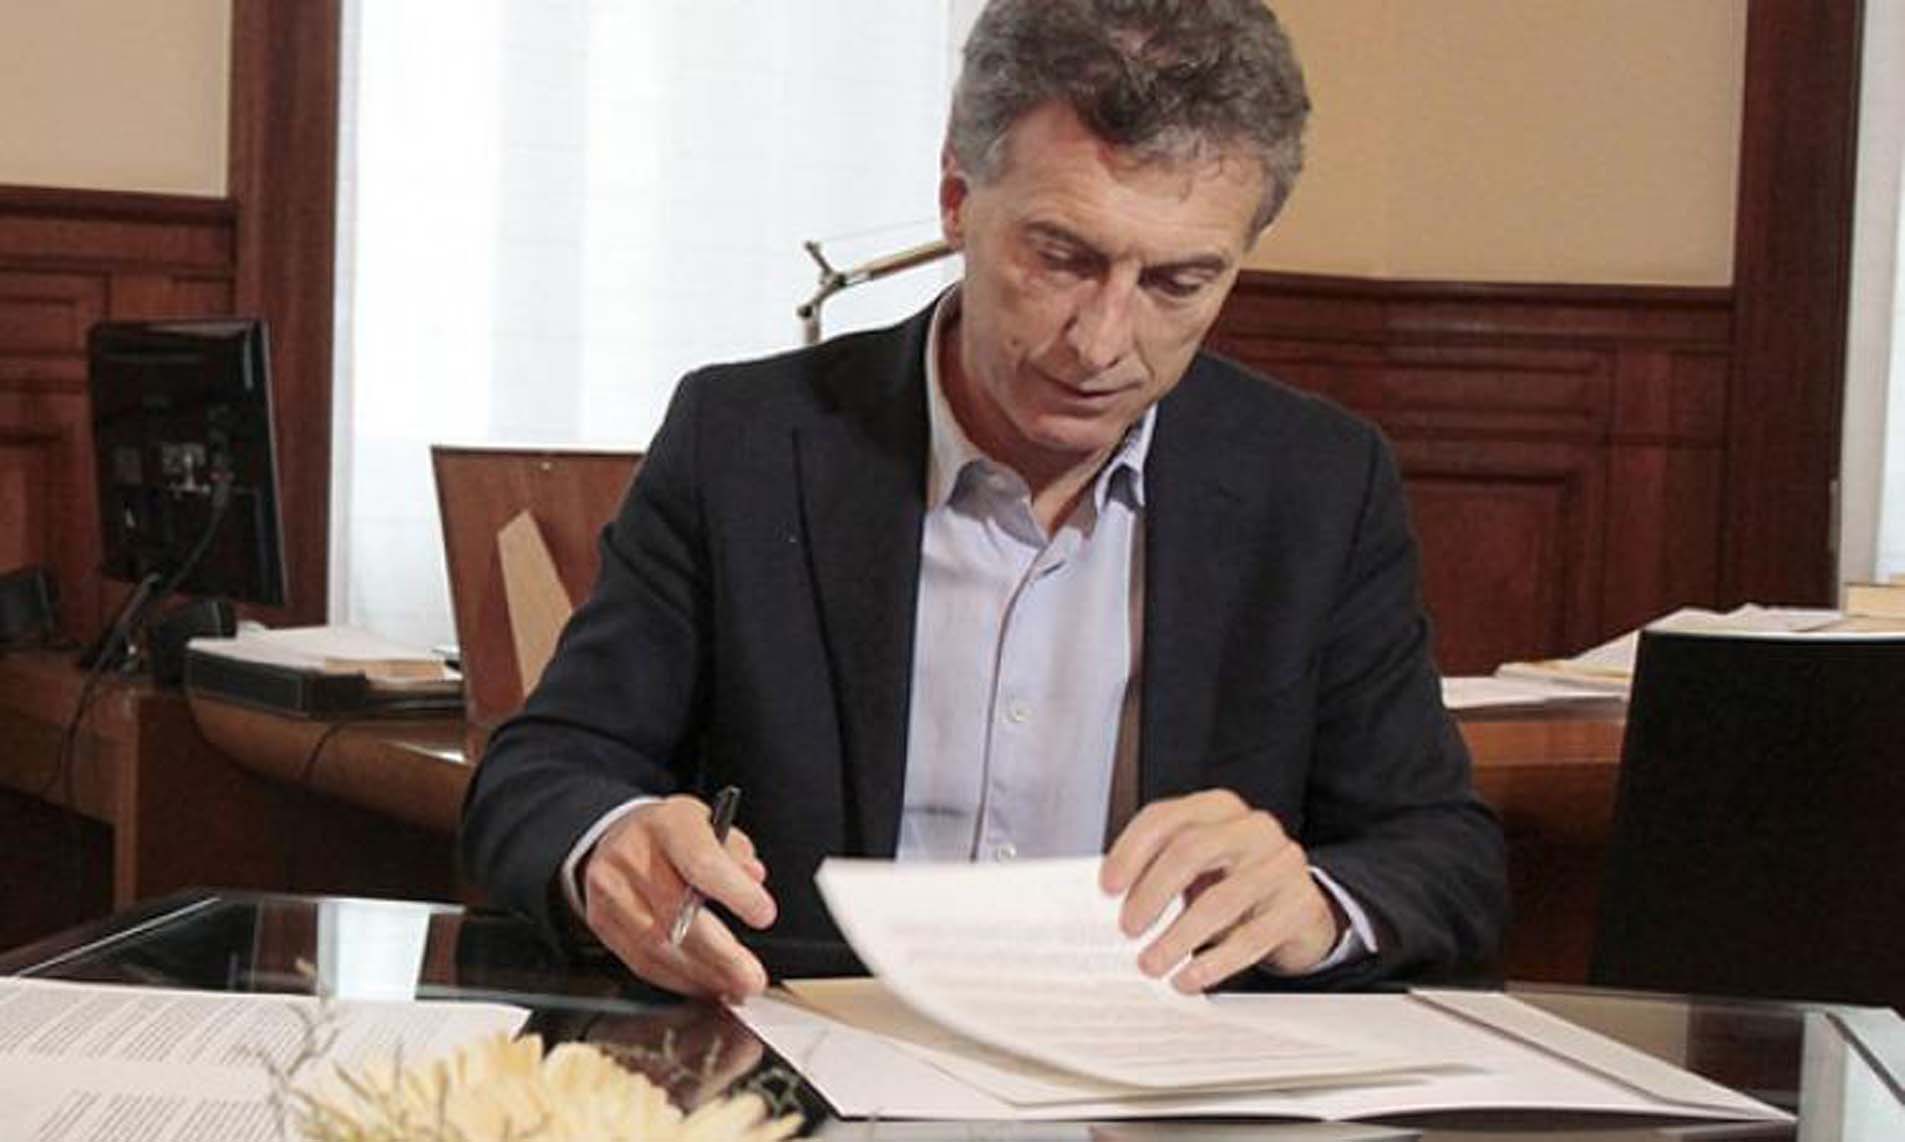 Macri vetó la ley antitarifazo